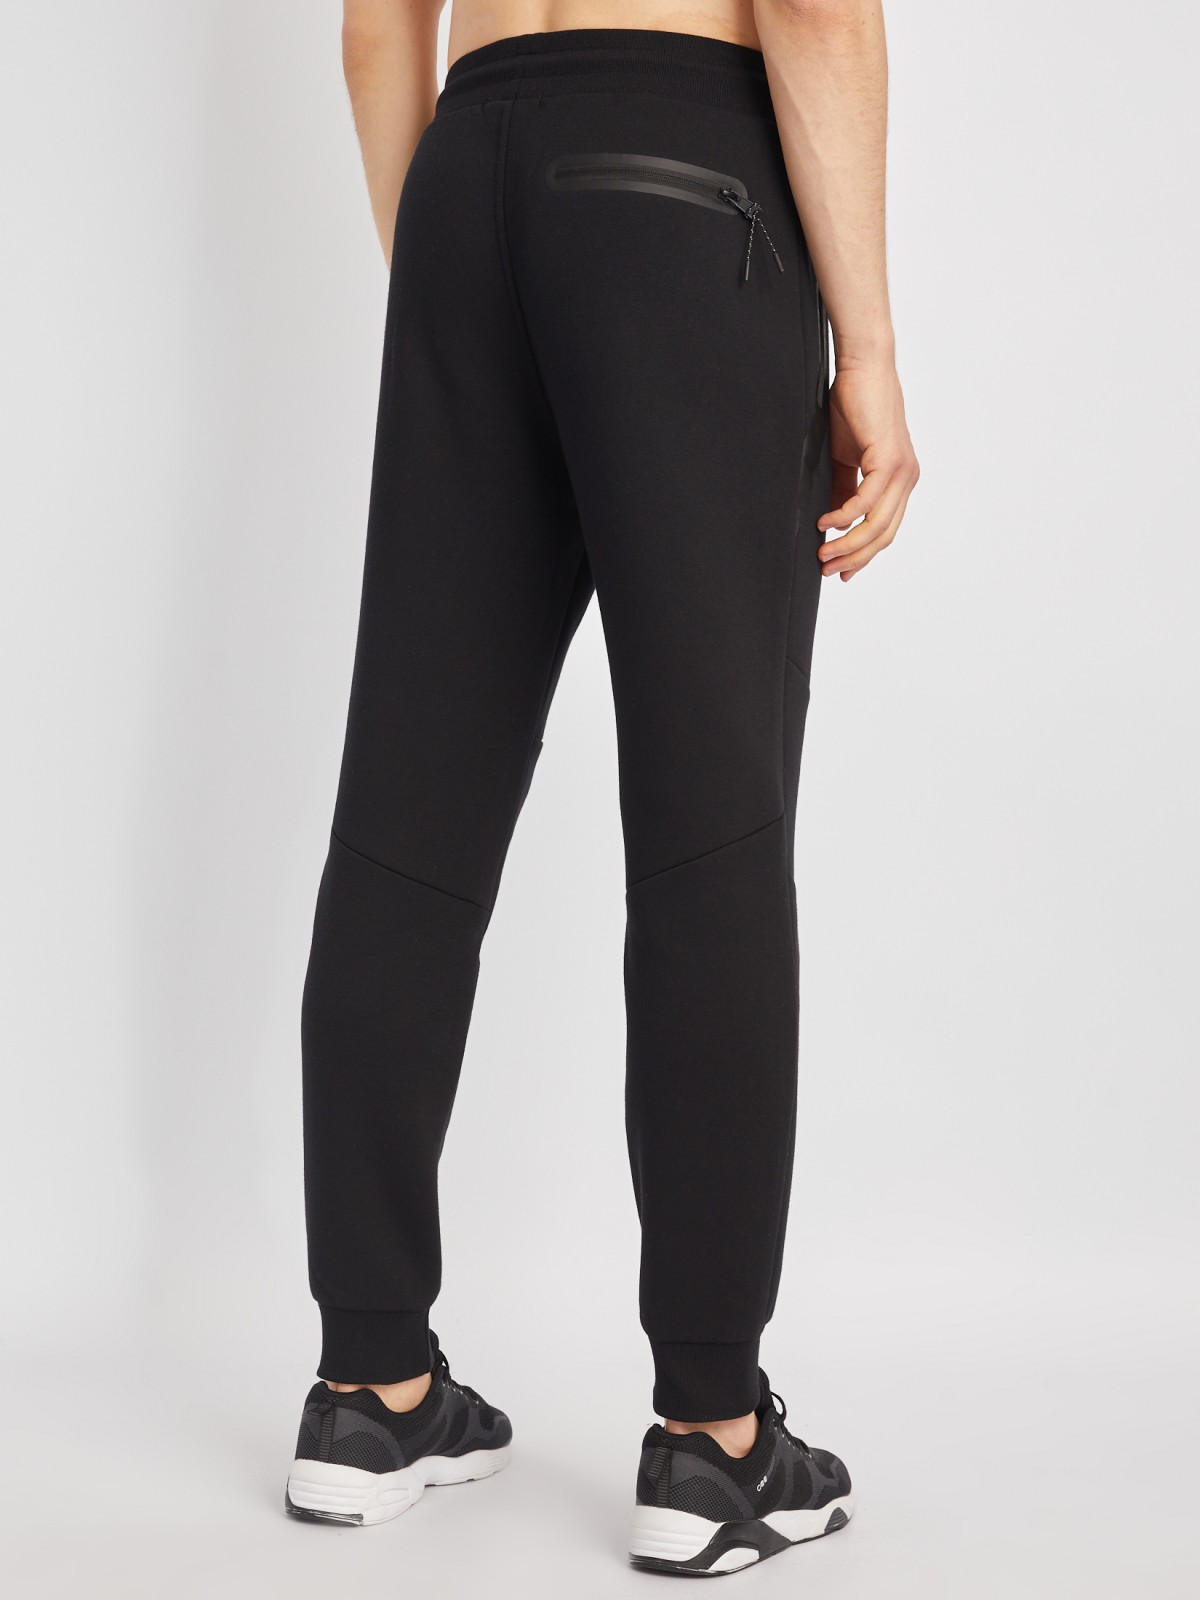 Утеплённые трикотажные брюки-джоггеры в спортивном стиле zolla 014117660063, цвет черный, размер S - фото 6